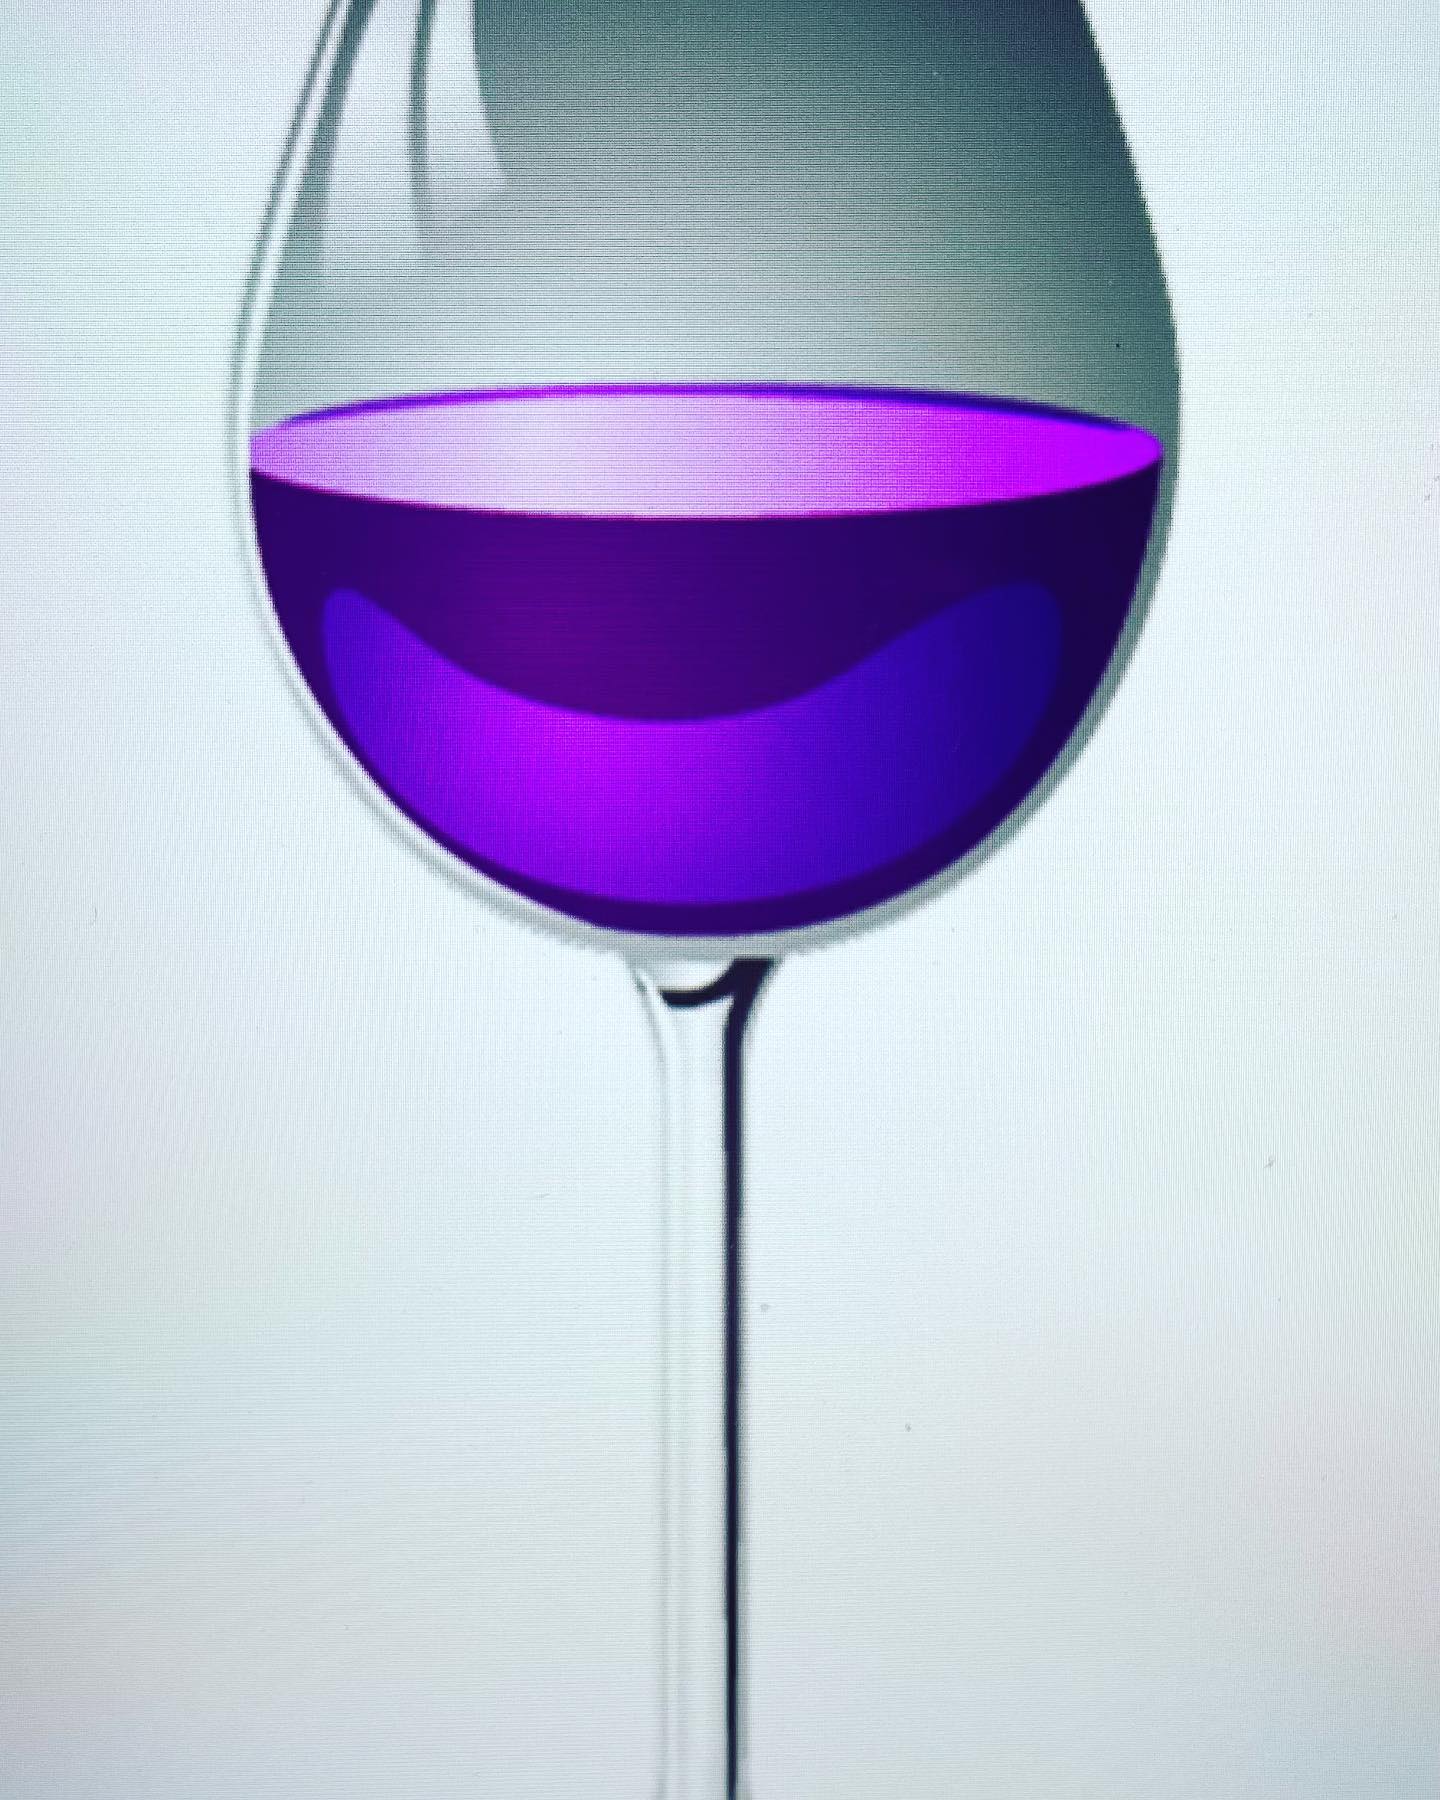 #認知症リスク86%も下がる飲み物1日3杯のワインを飲んでいる人が全く飲まない人に比べて、認知症の発症率が75%低いという結果が出ました。